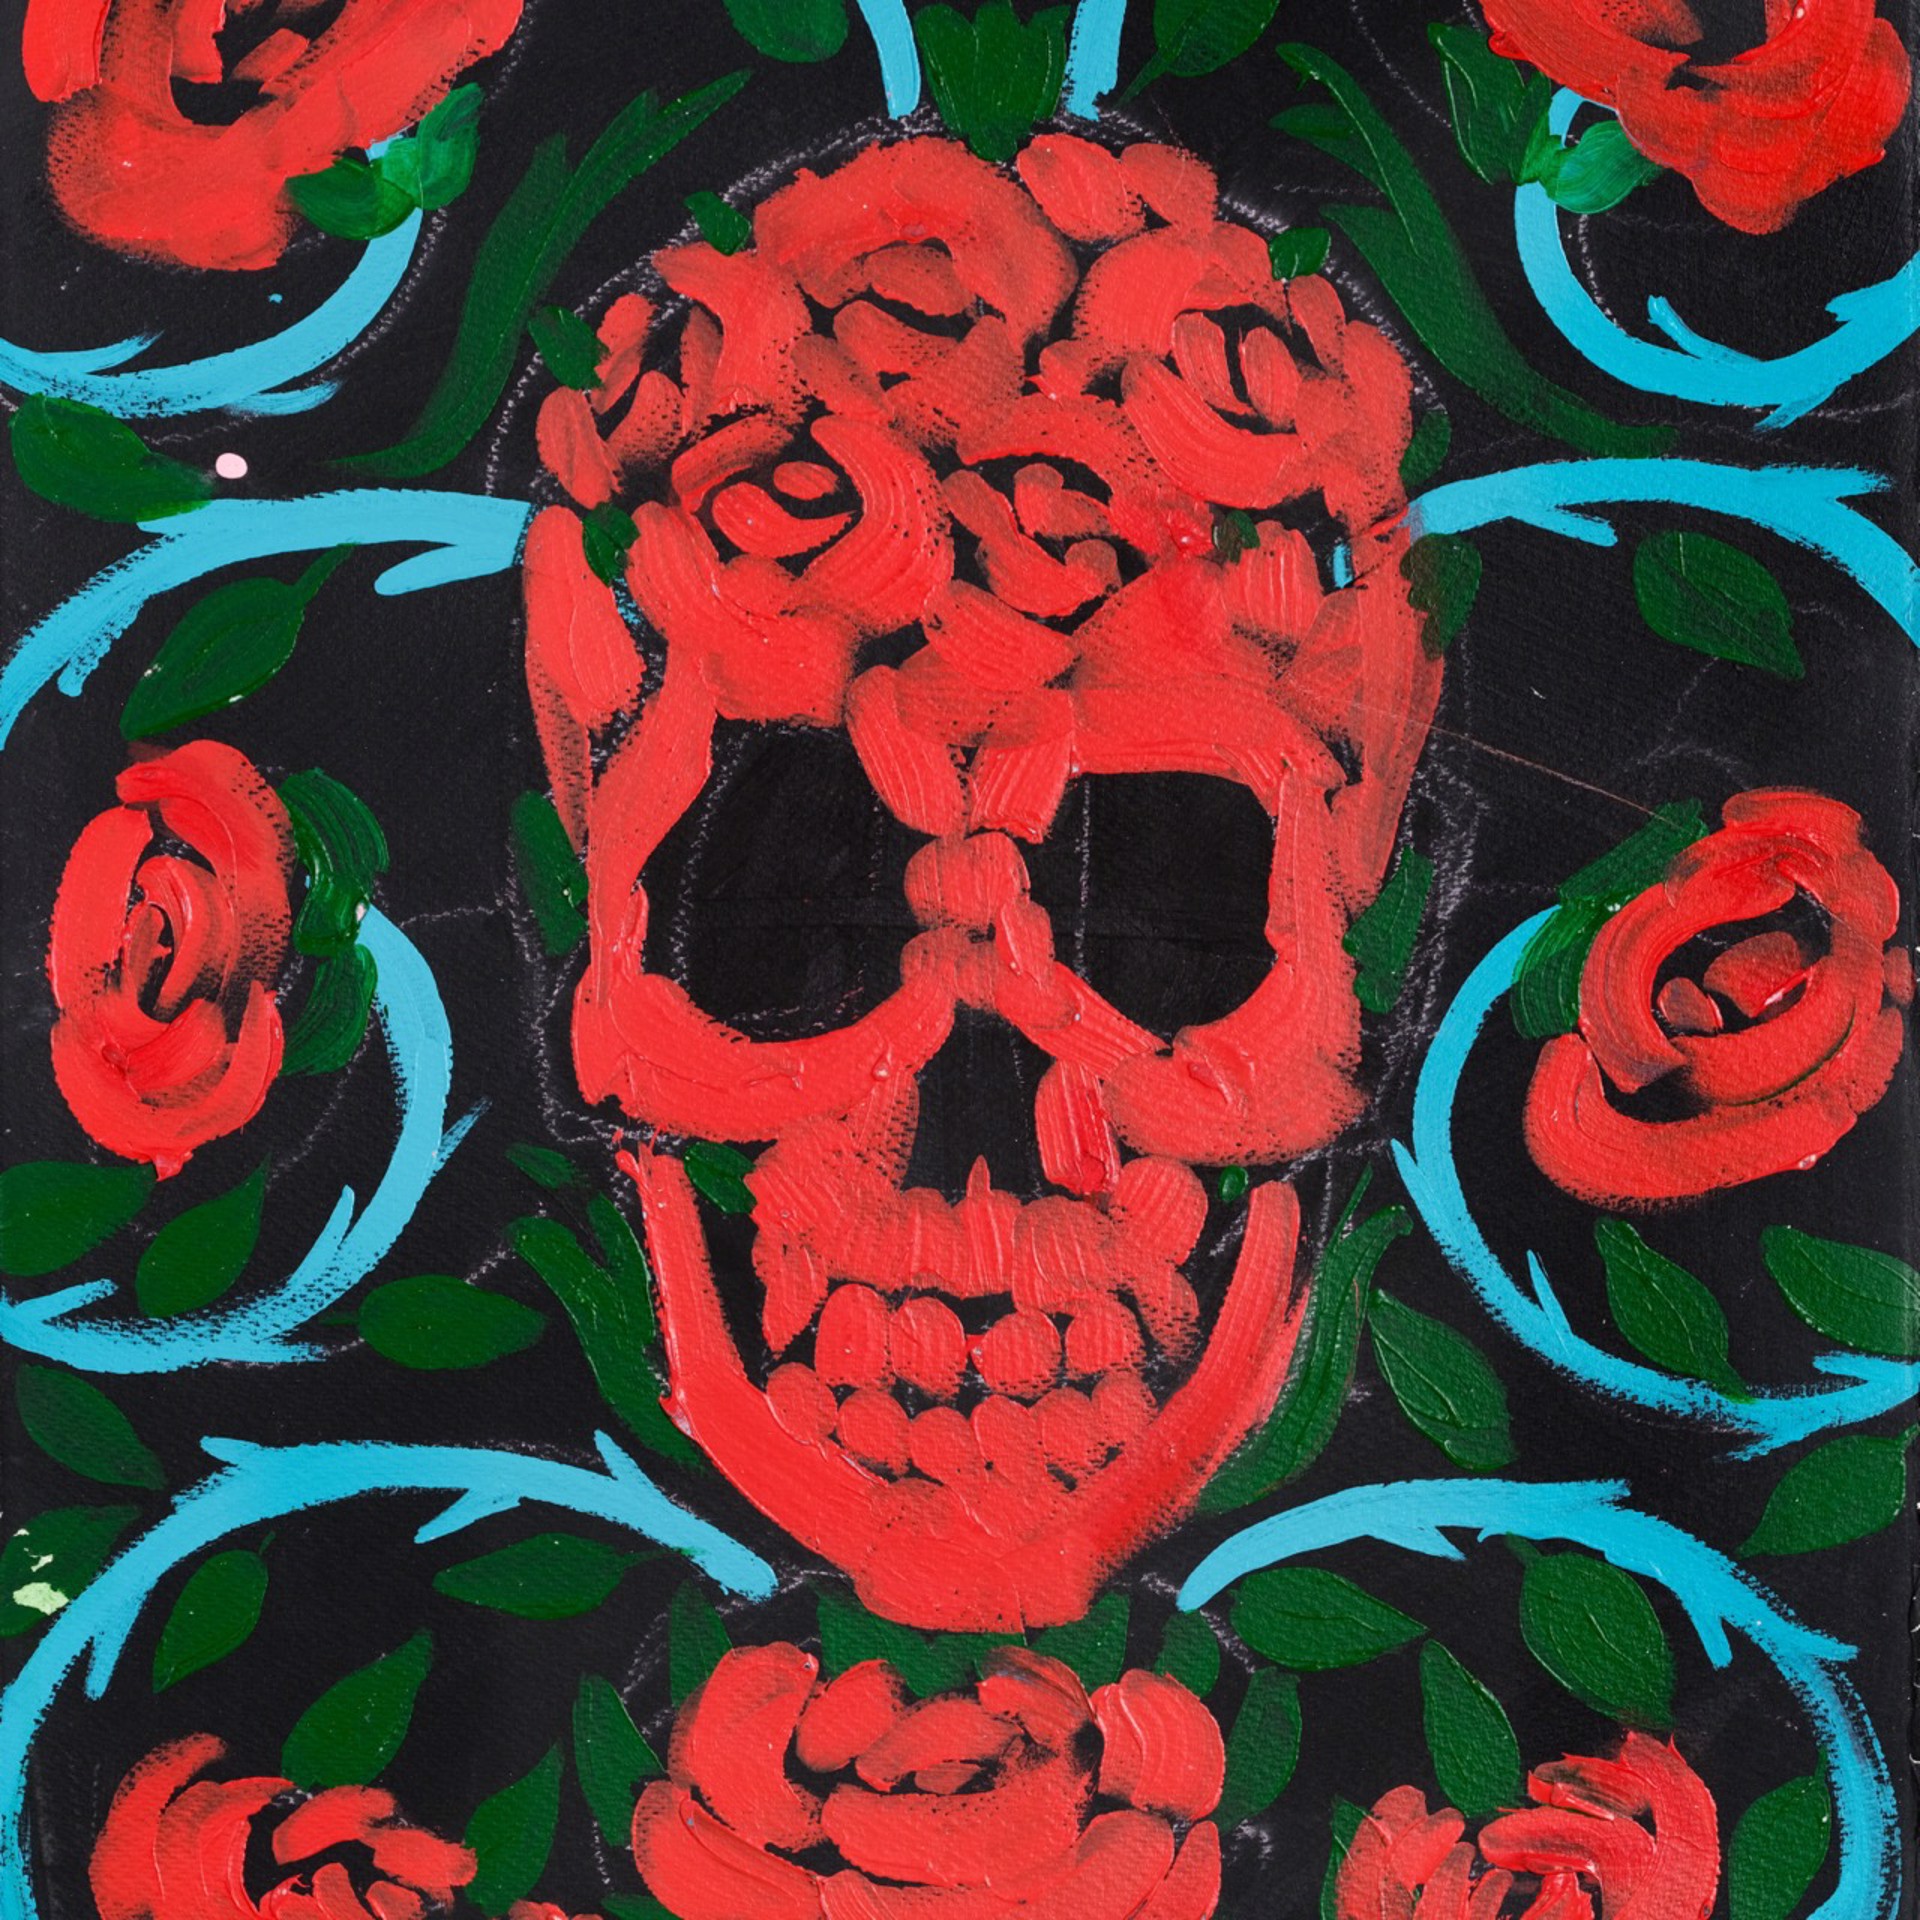 Red Skull by Bradley Theodore